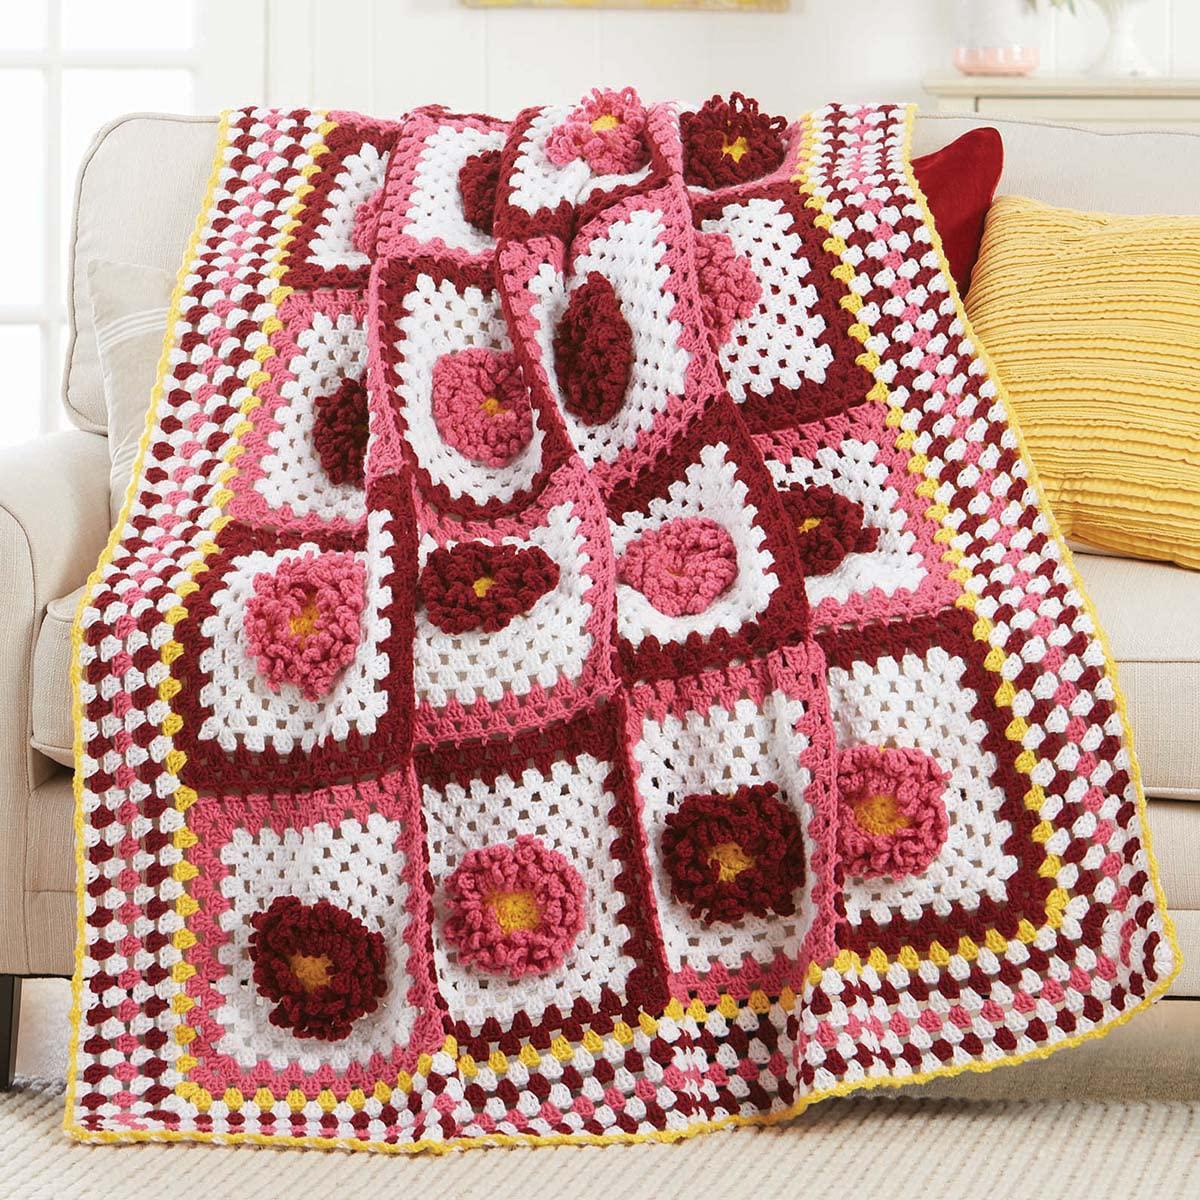 herrschners spring squares crochet afghan kit